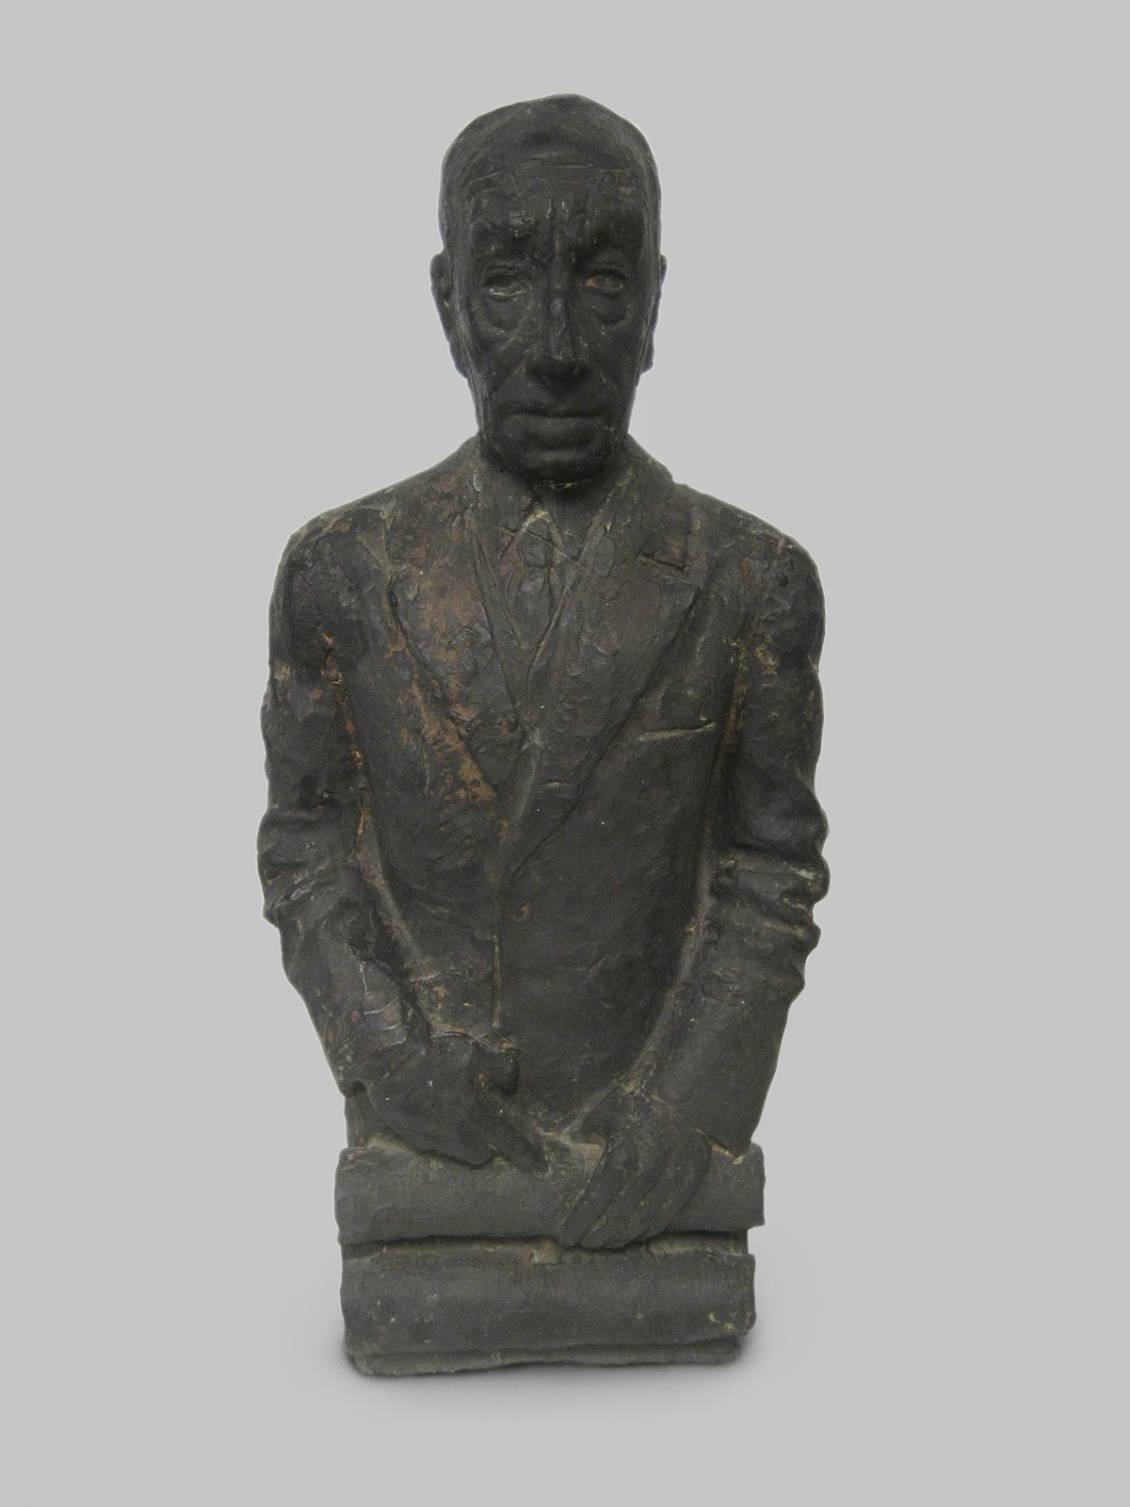 John Rädecker, Bronzen buste van Henry van de Velde, schenking van mevrouw Rädecker in 1957